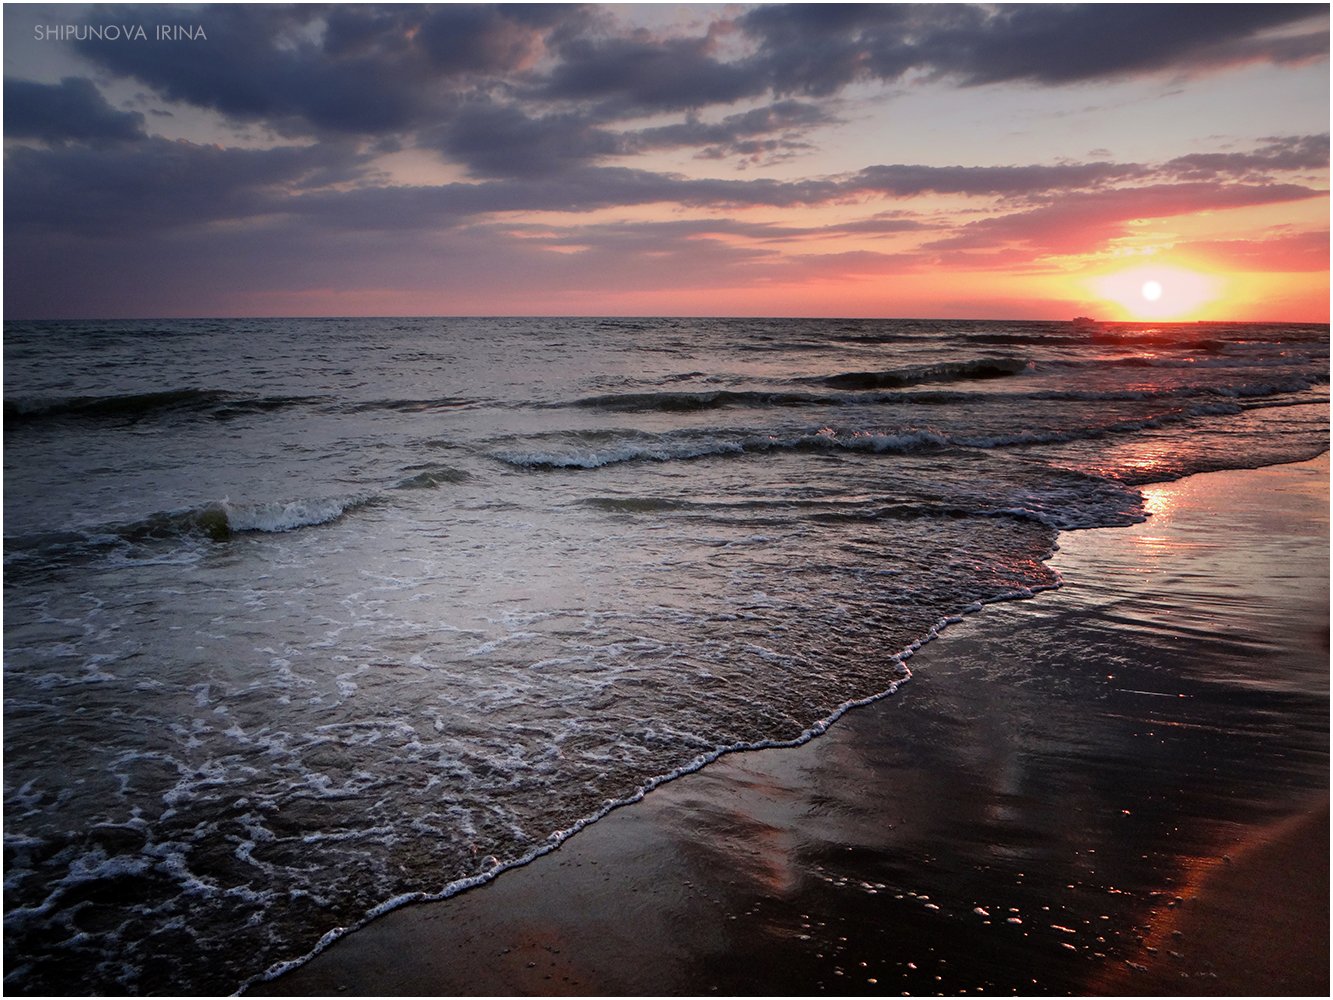 чёрное море закат отражение лик, Шипунова Ирина